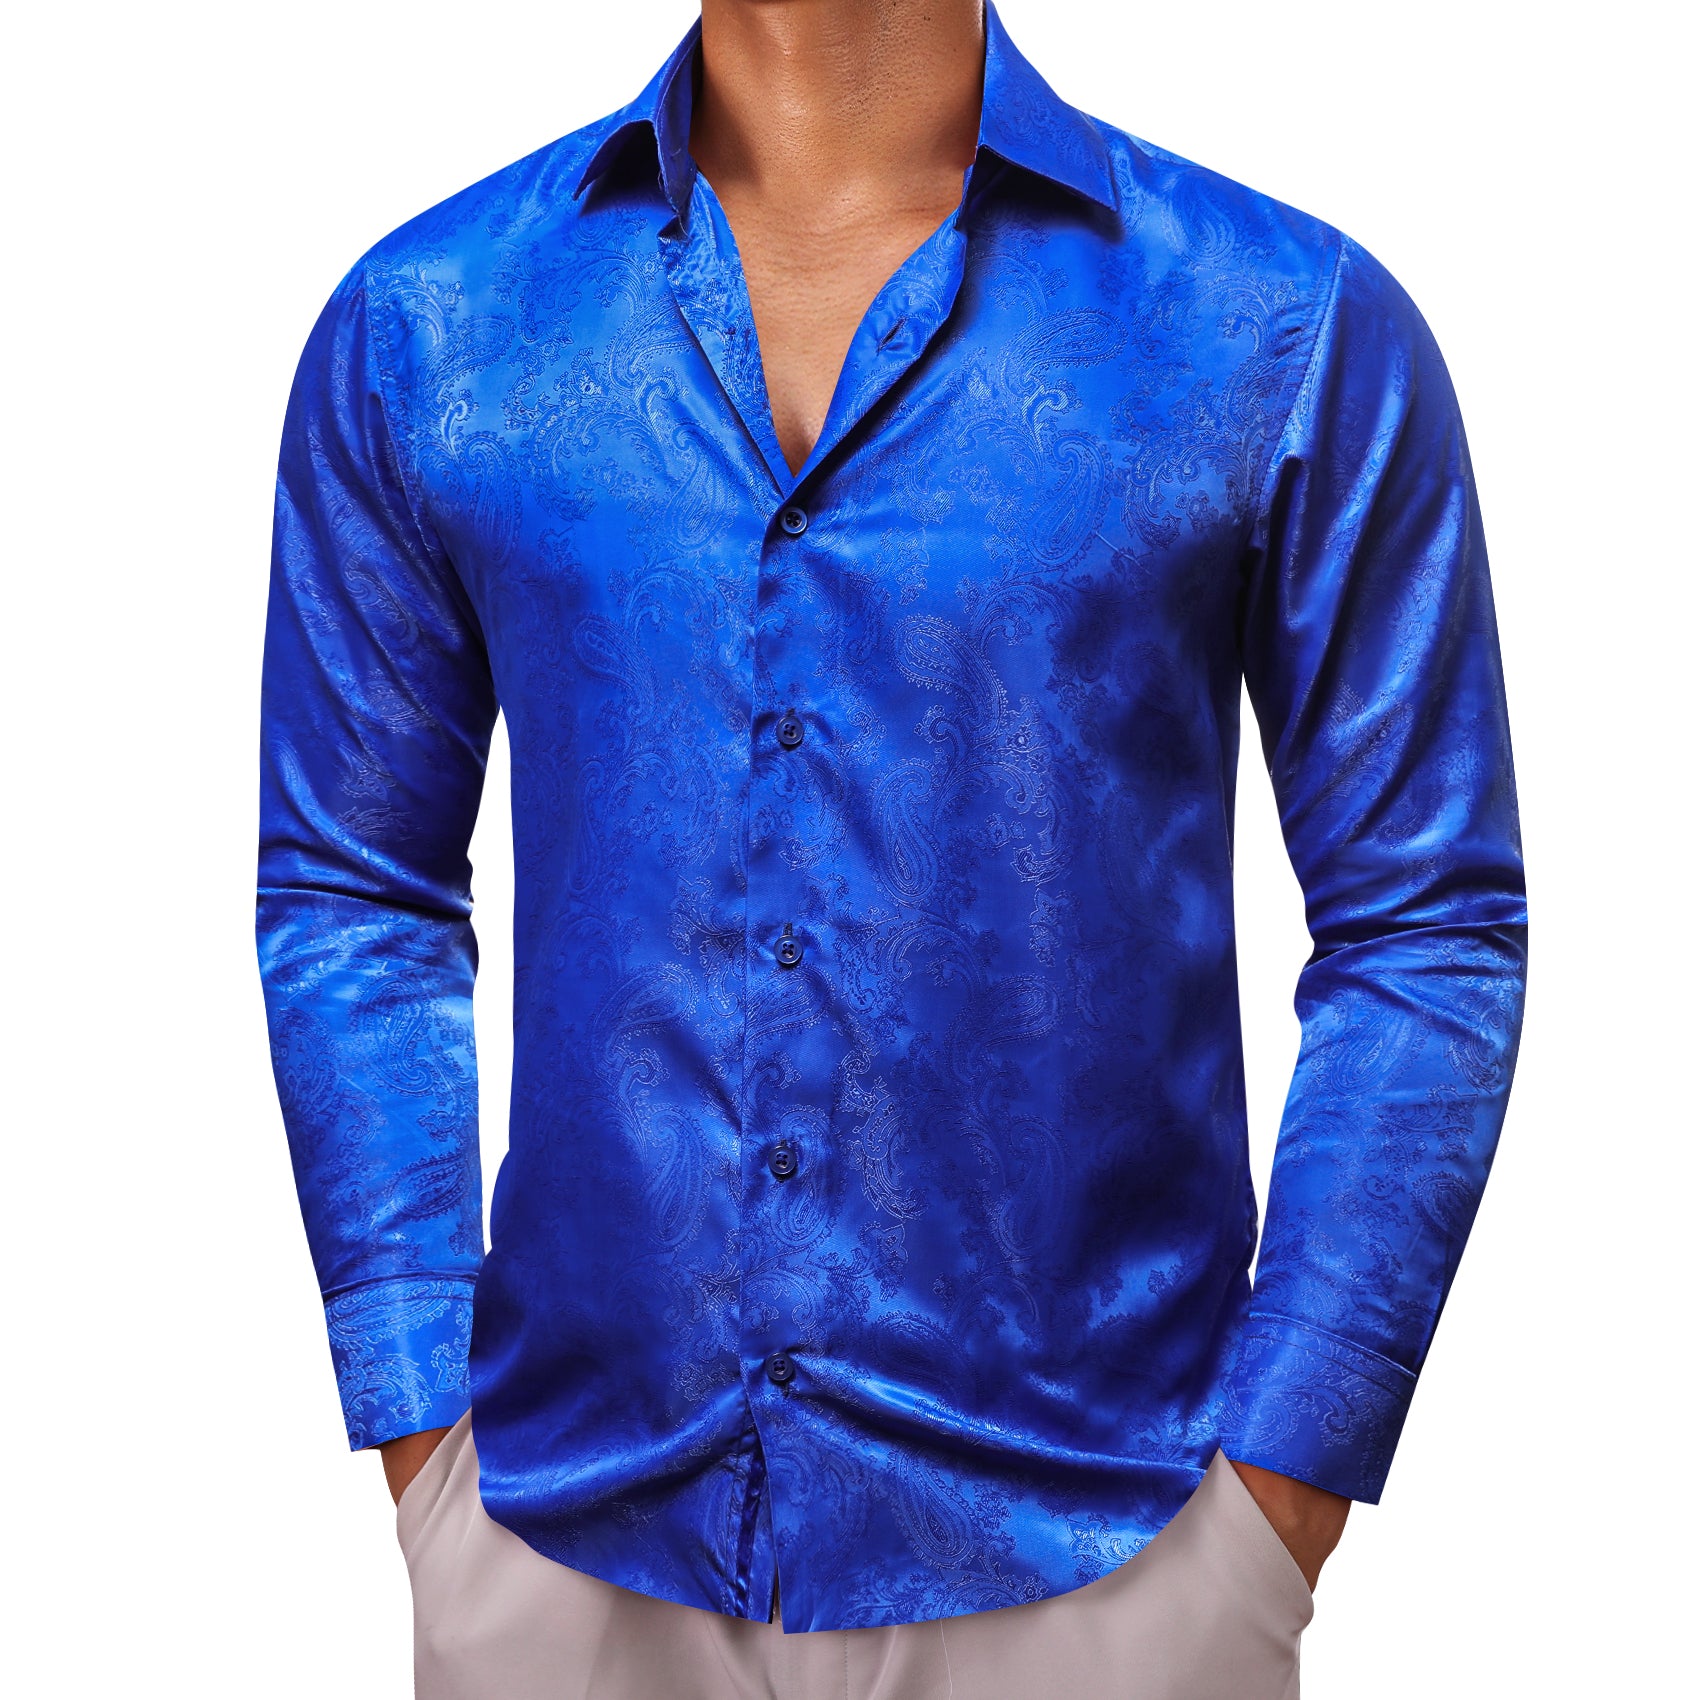 Barry.wang Cerulean Blue Paisley Silk Men's Shirt